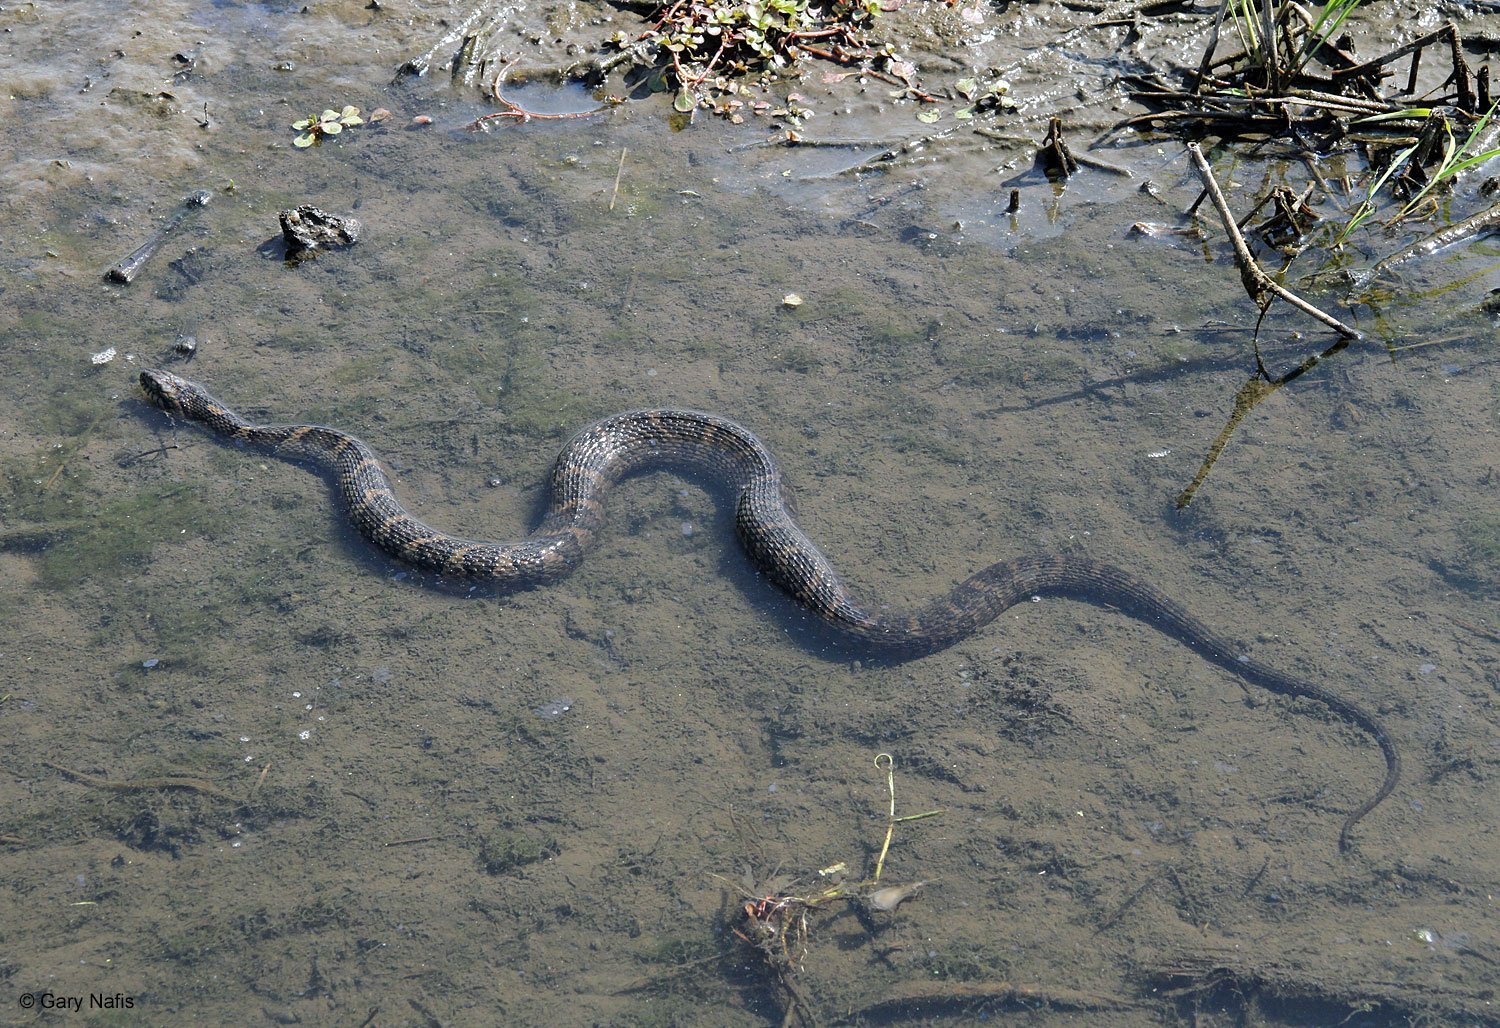 Много змей в воде